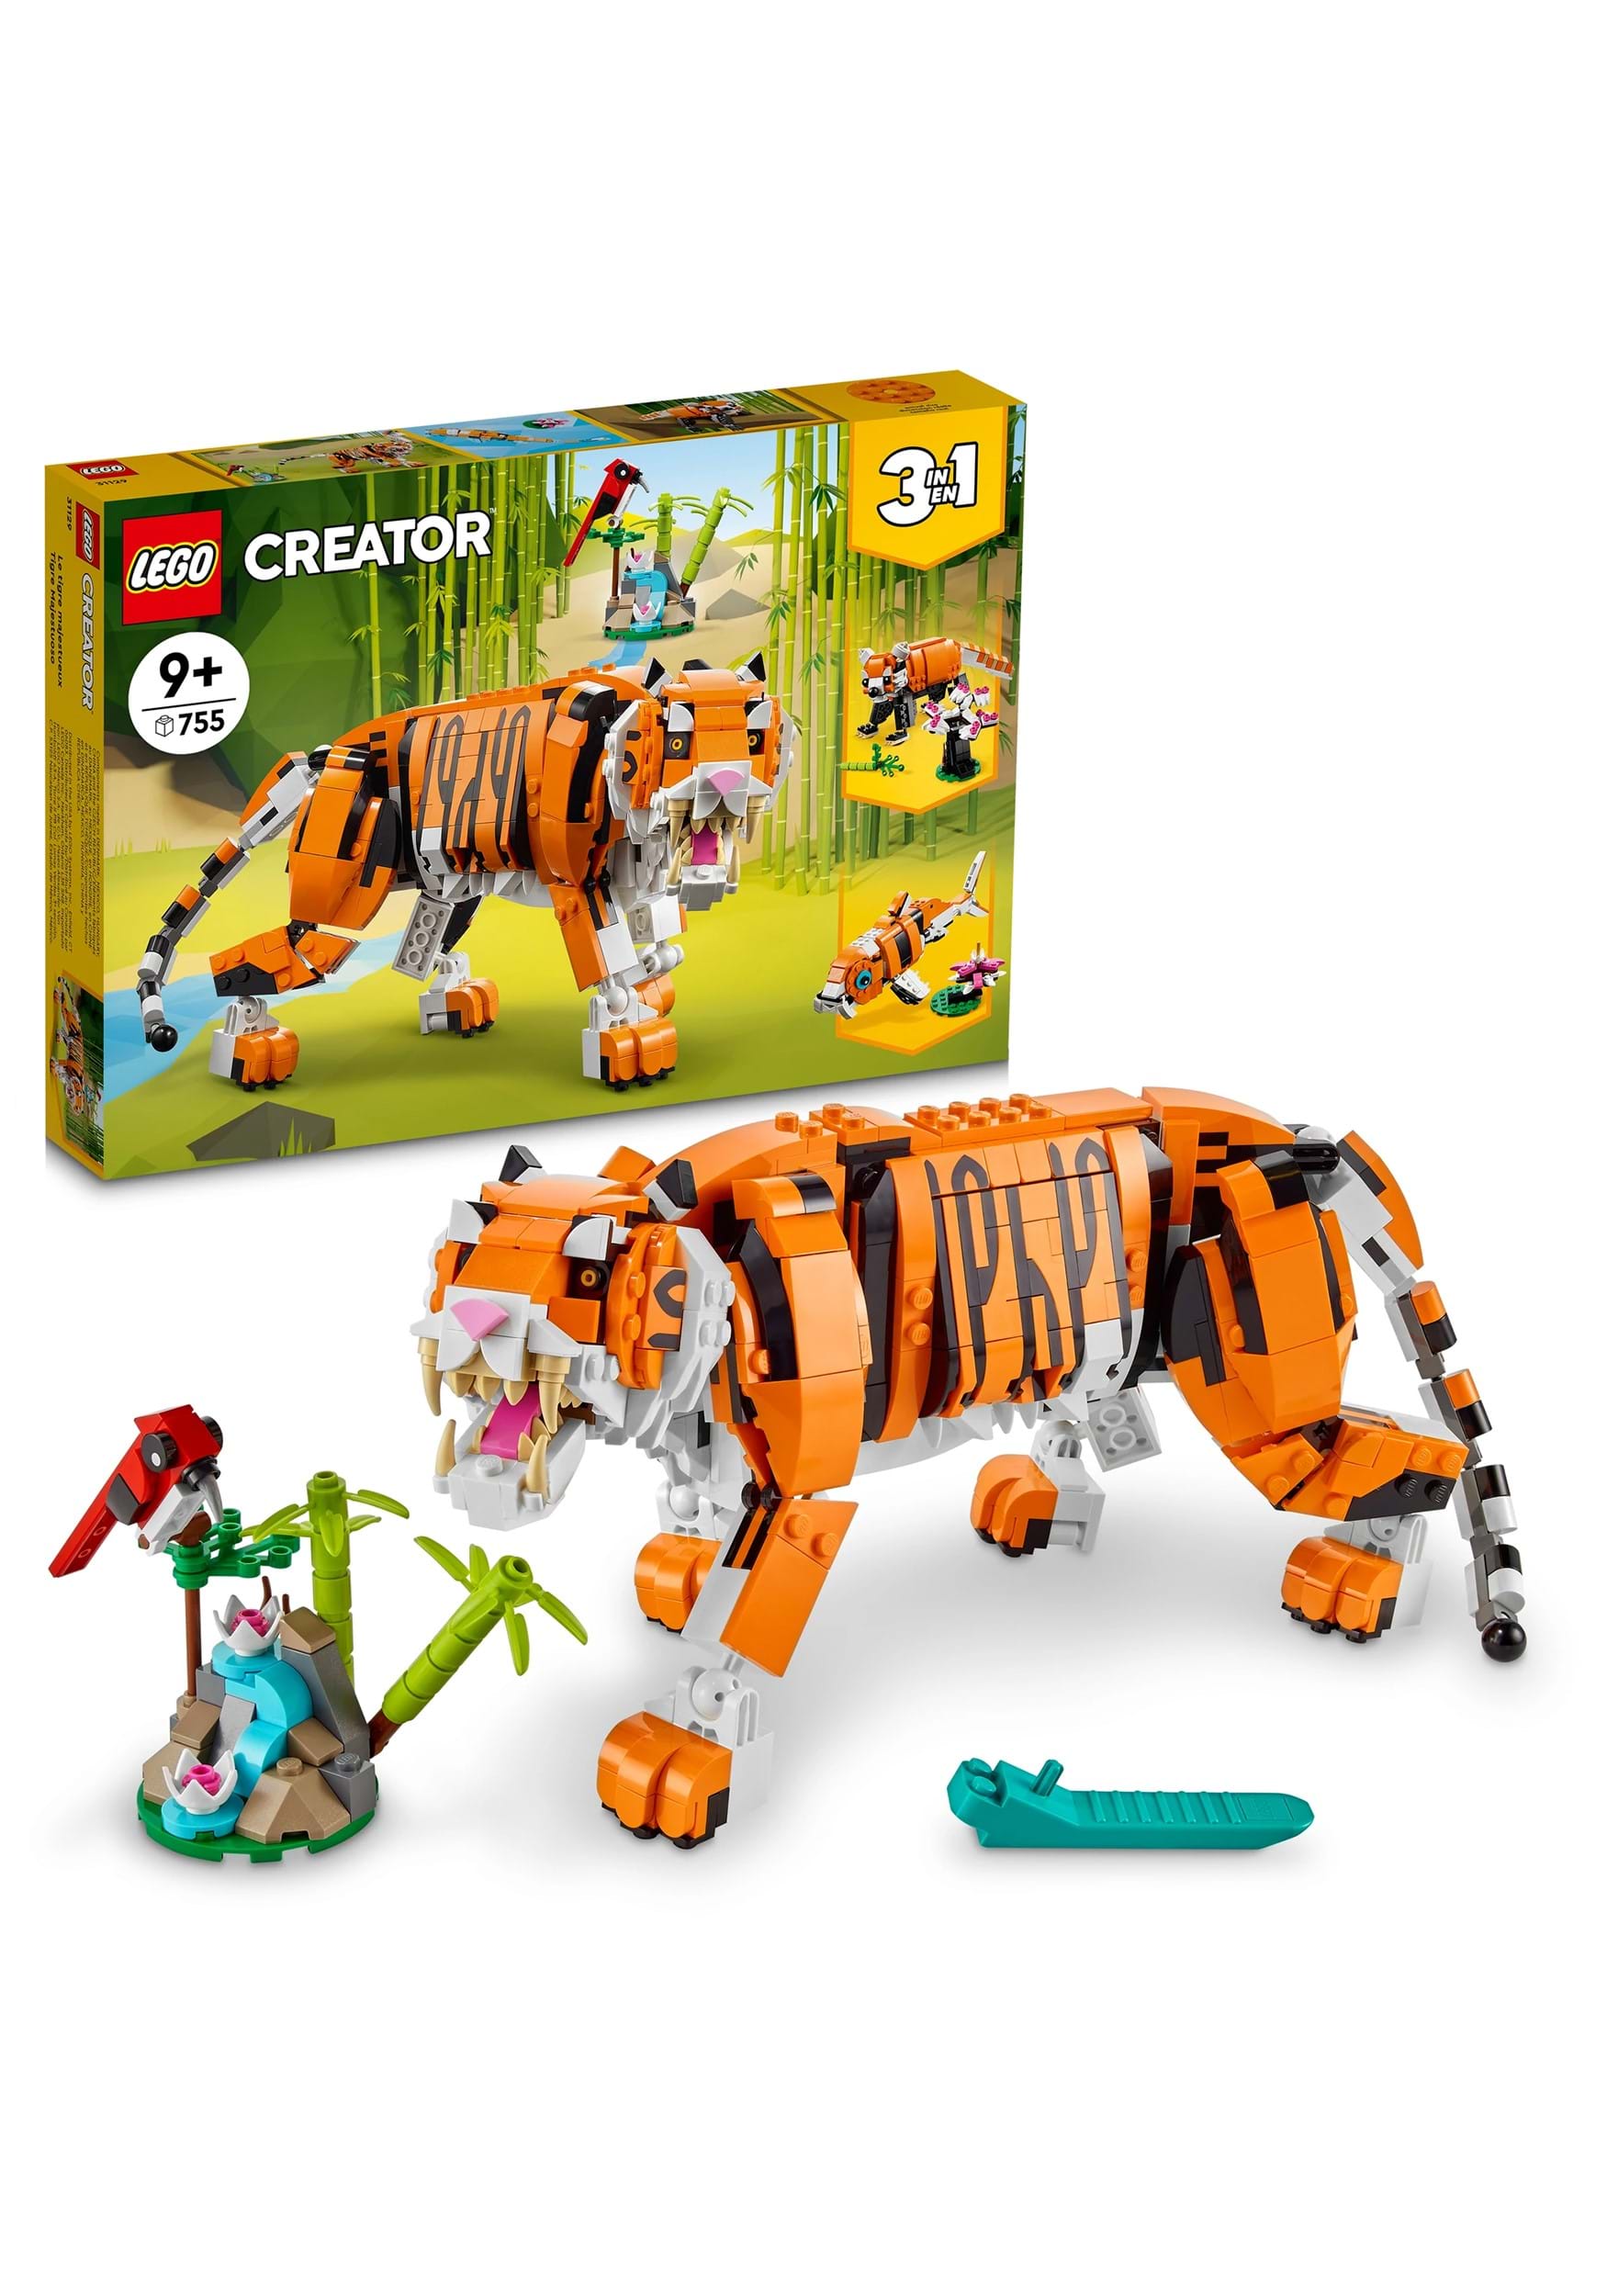 LEGO Creator Tiger 3-in-1 Building Set